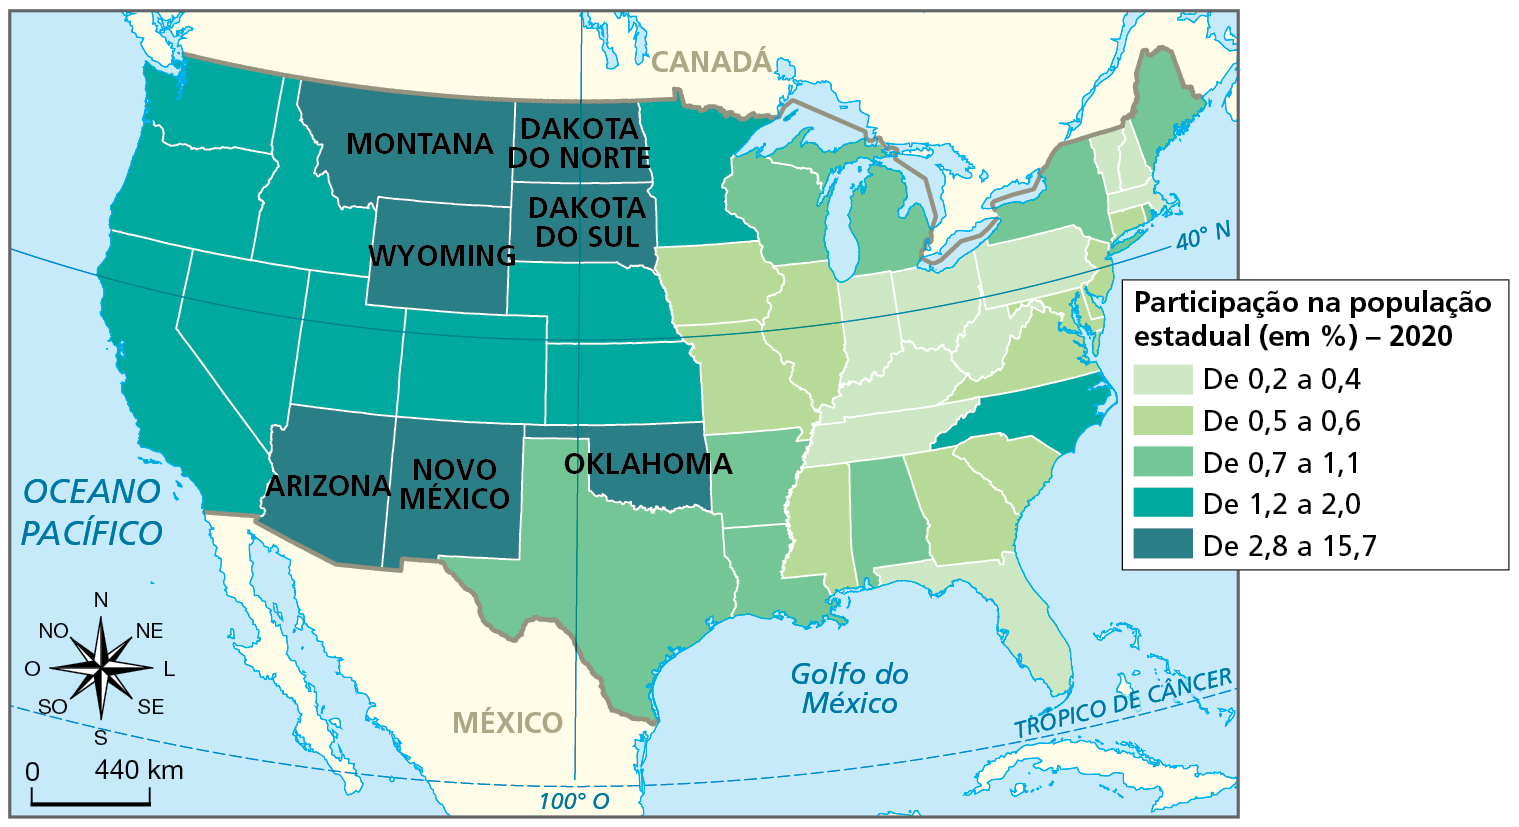 Mapa. Estados Unidos: distribuição da população indígena, 2020. Mapa de parte da América do Norte com a divisão política dos Estados Unidos e a porcentagem da população indígena na população de cada estado.  Participação na população estadual, em porcentagem, em 2020:   De 0,2 a 0,4 por cento: estados na faixa leste e nordeste.  De 0,5 a 0,6 por cento: estados na faixa leste e sudeste.  De 0,7 a 1,1 por cento: estados ao sul e nordeste.  De 1,2 a 2,0 por cento: um estado na costa leste, um na porção norte e vários estados nas porções central e na costa oeste.  De 2,8 a 15,7 por cento: estados ao norte (Wyoming, Dakota do Sul, Dakota do Norte e Montana) e na porção sul (Arizona, Novo México e Oklahoma).  À esquerda, rosa dos ventos e escala de 0 a 440 quilômetros.